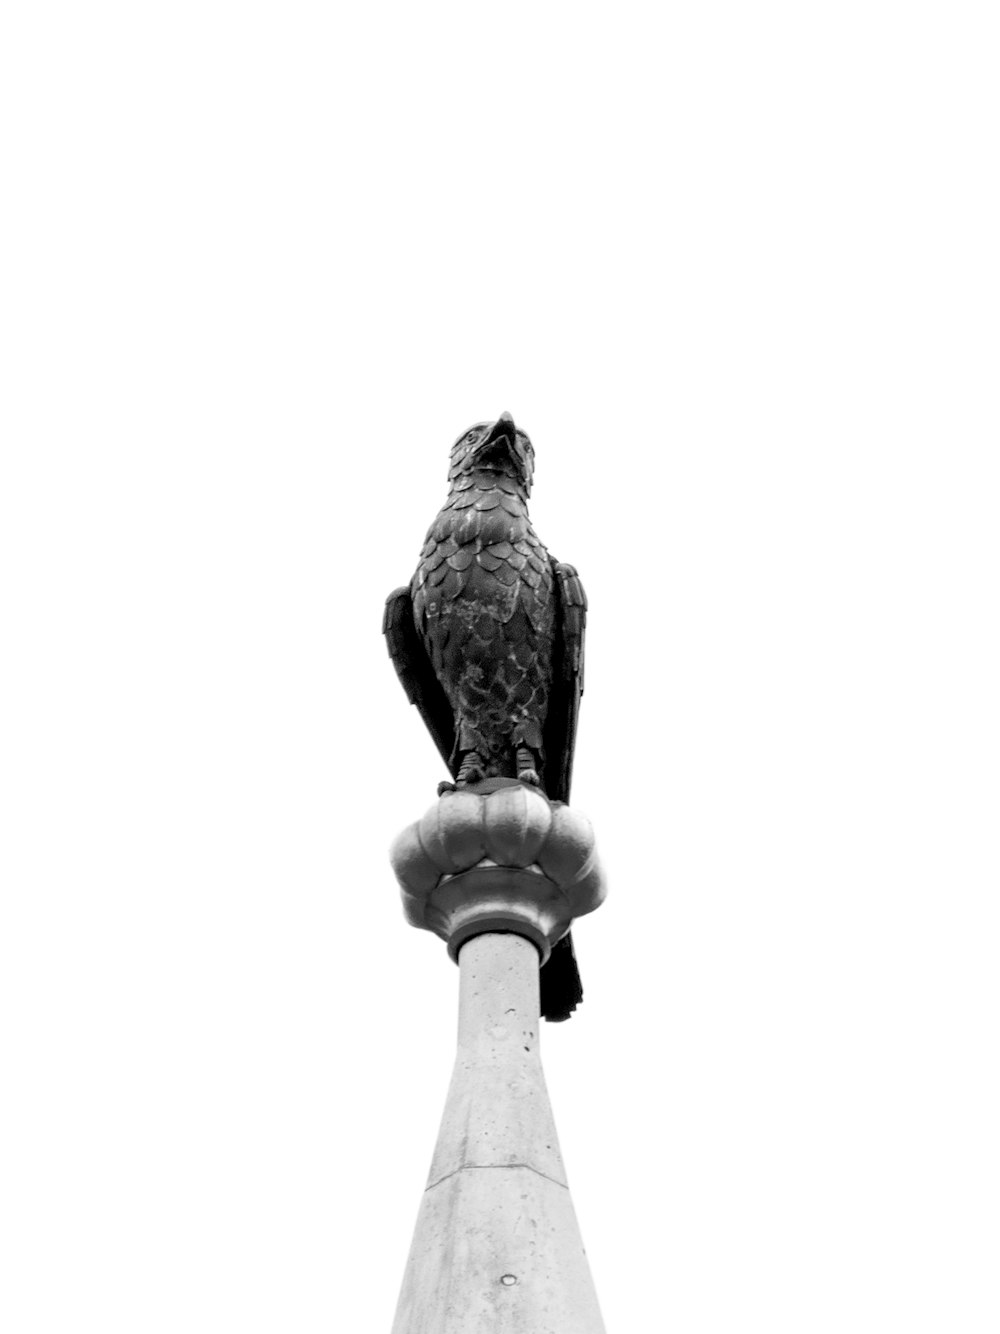 Una foto en blanco y negro de un pájaro posado en lo alto de un poste